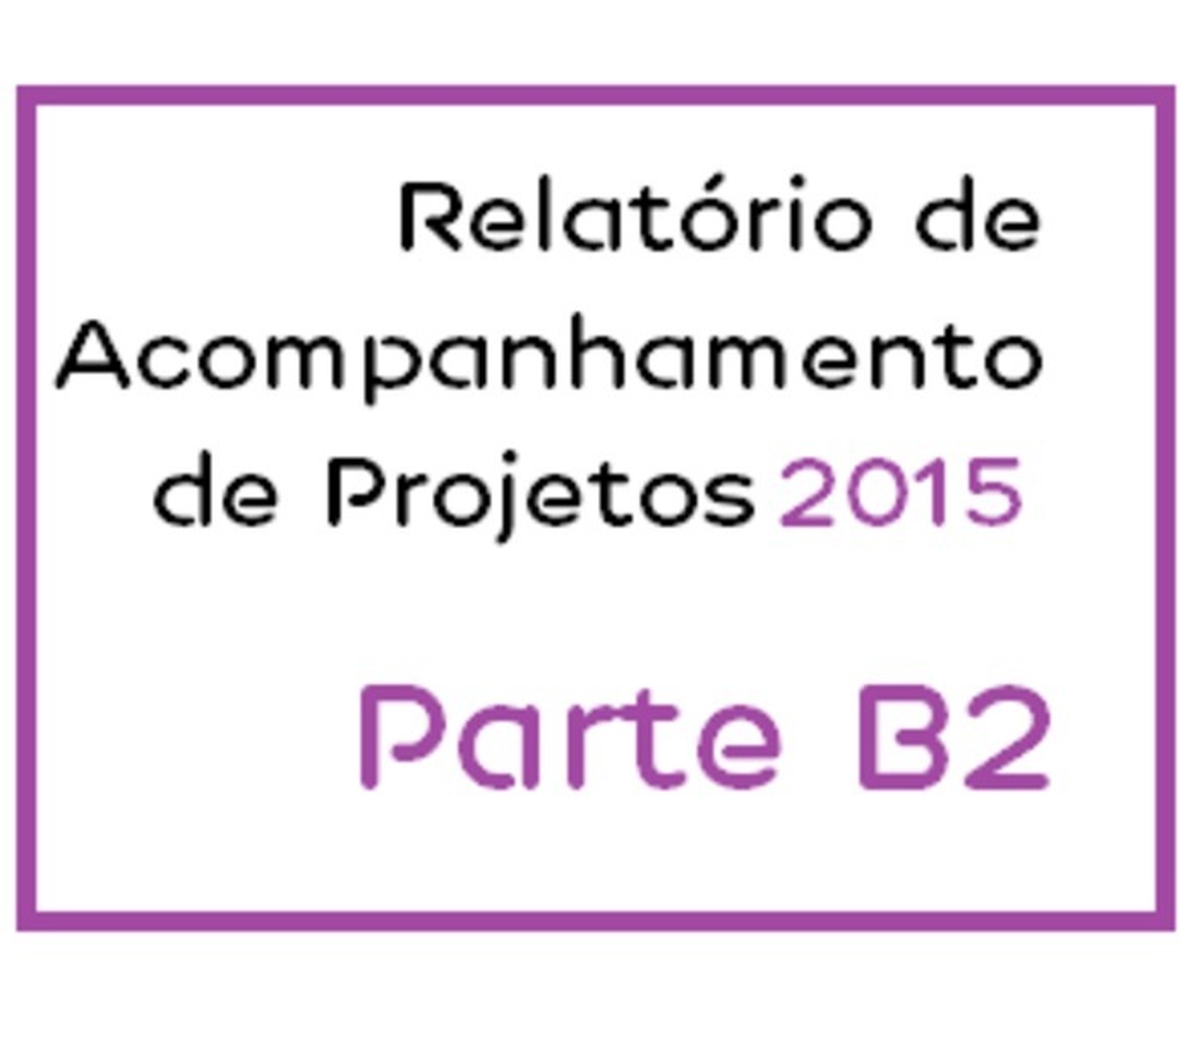 Parte B2 - Relatório de Acompanhamento de Projetos 2015